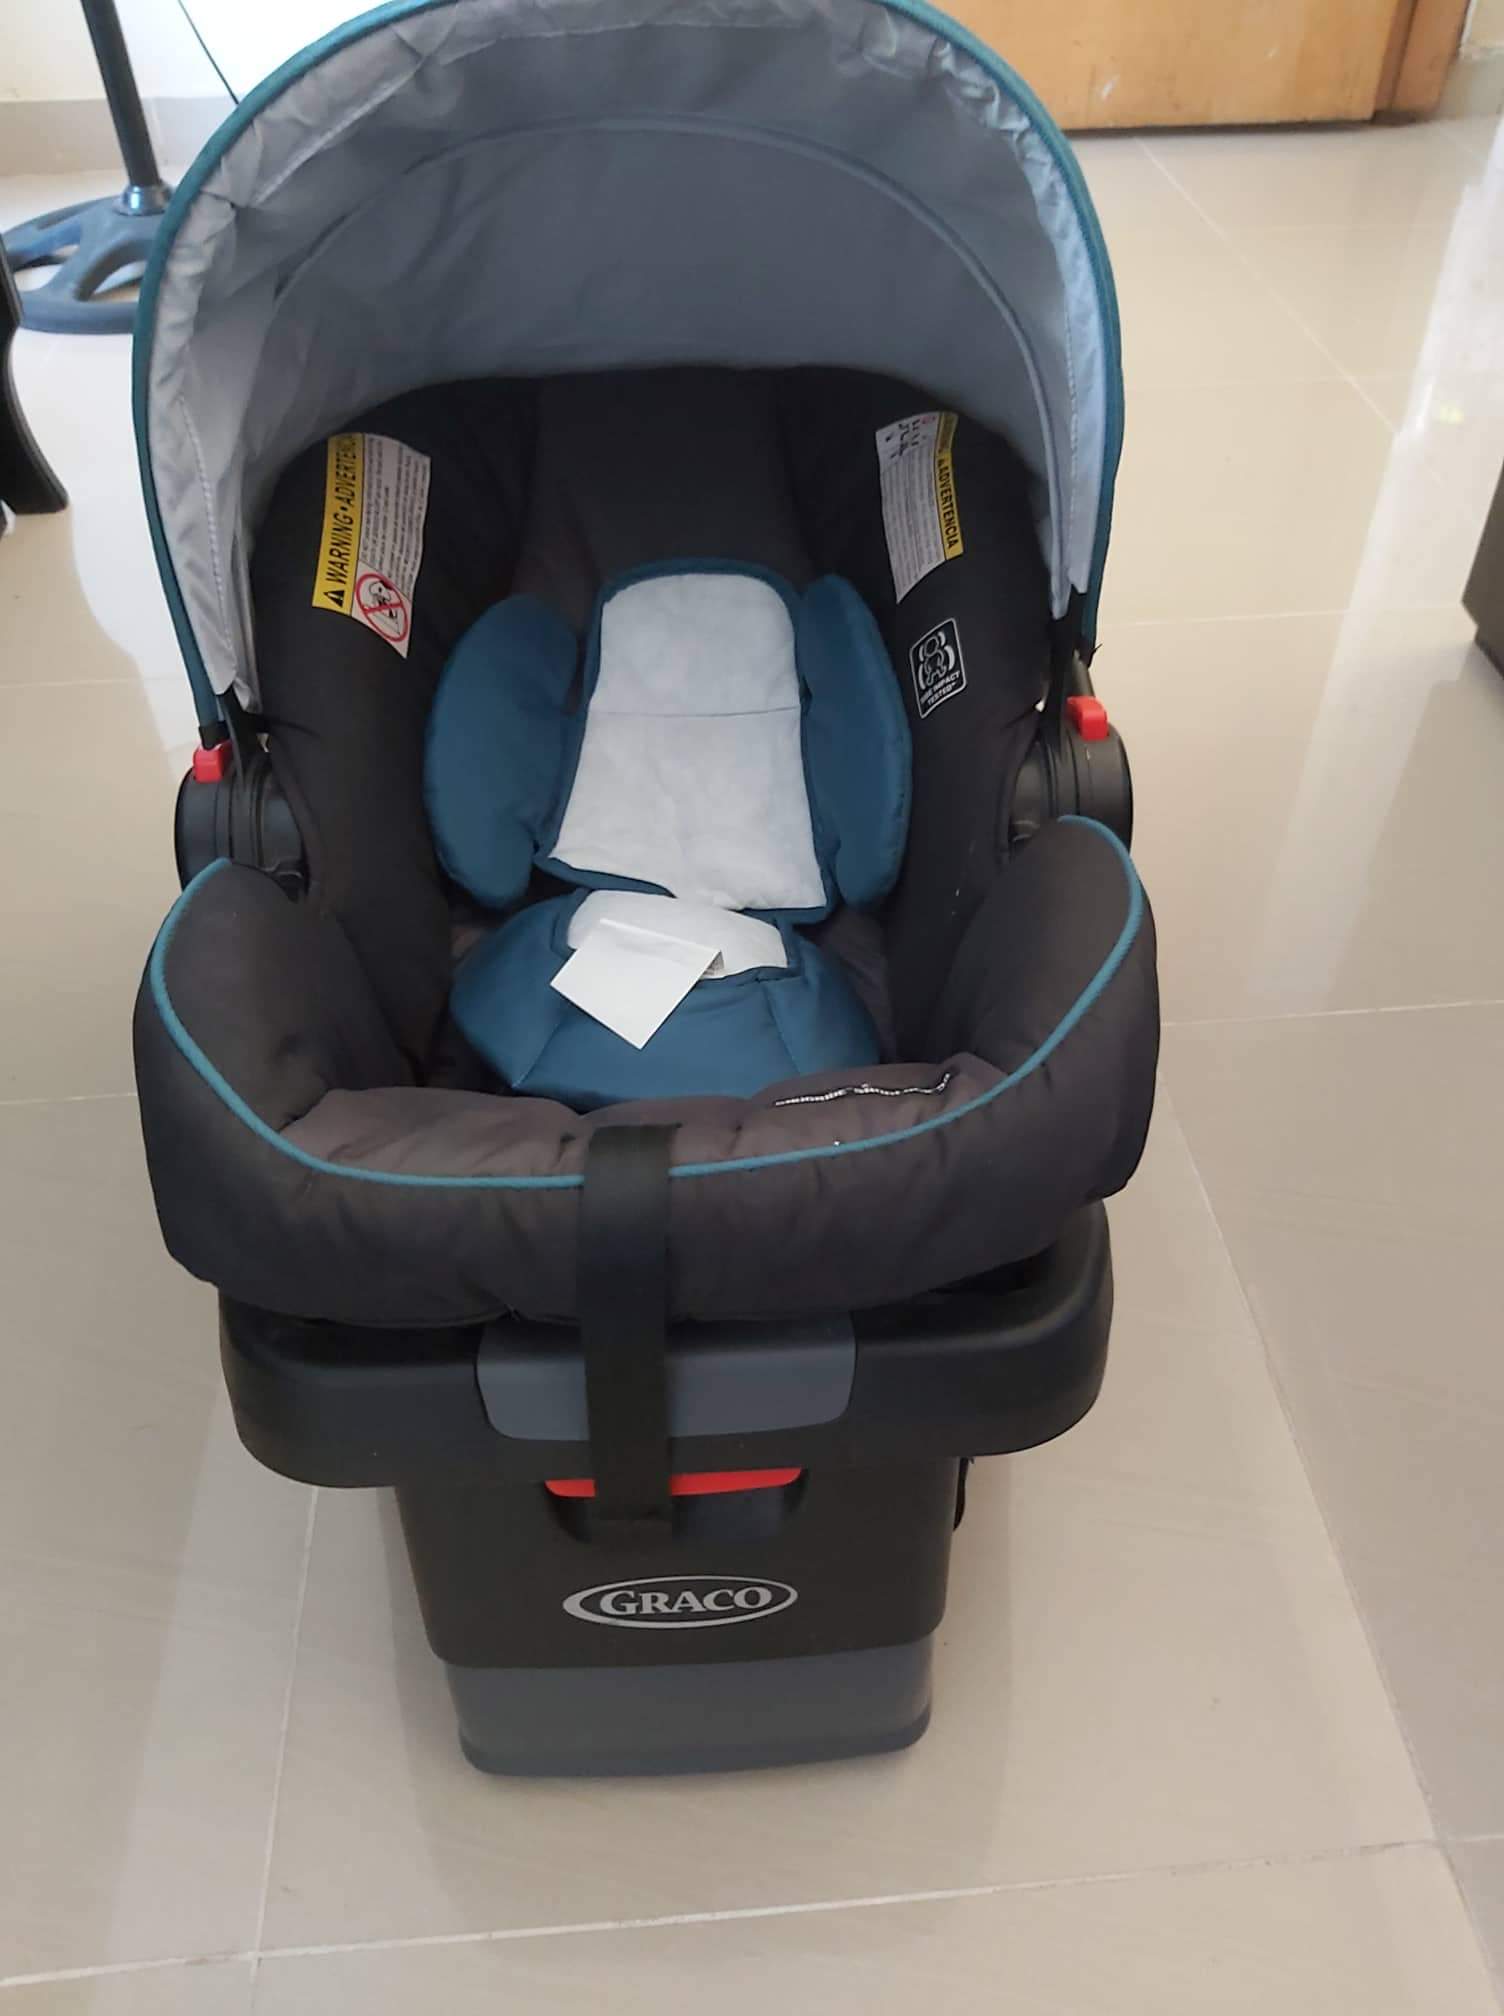 muebles - Coche y car seat de bebe